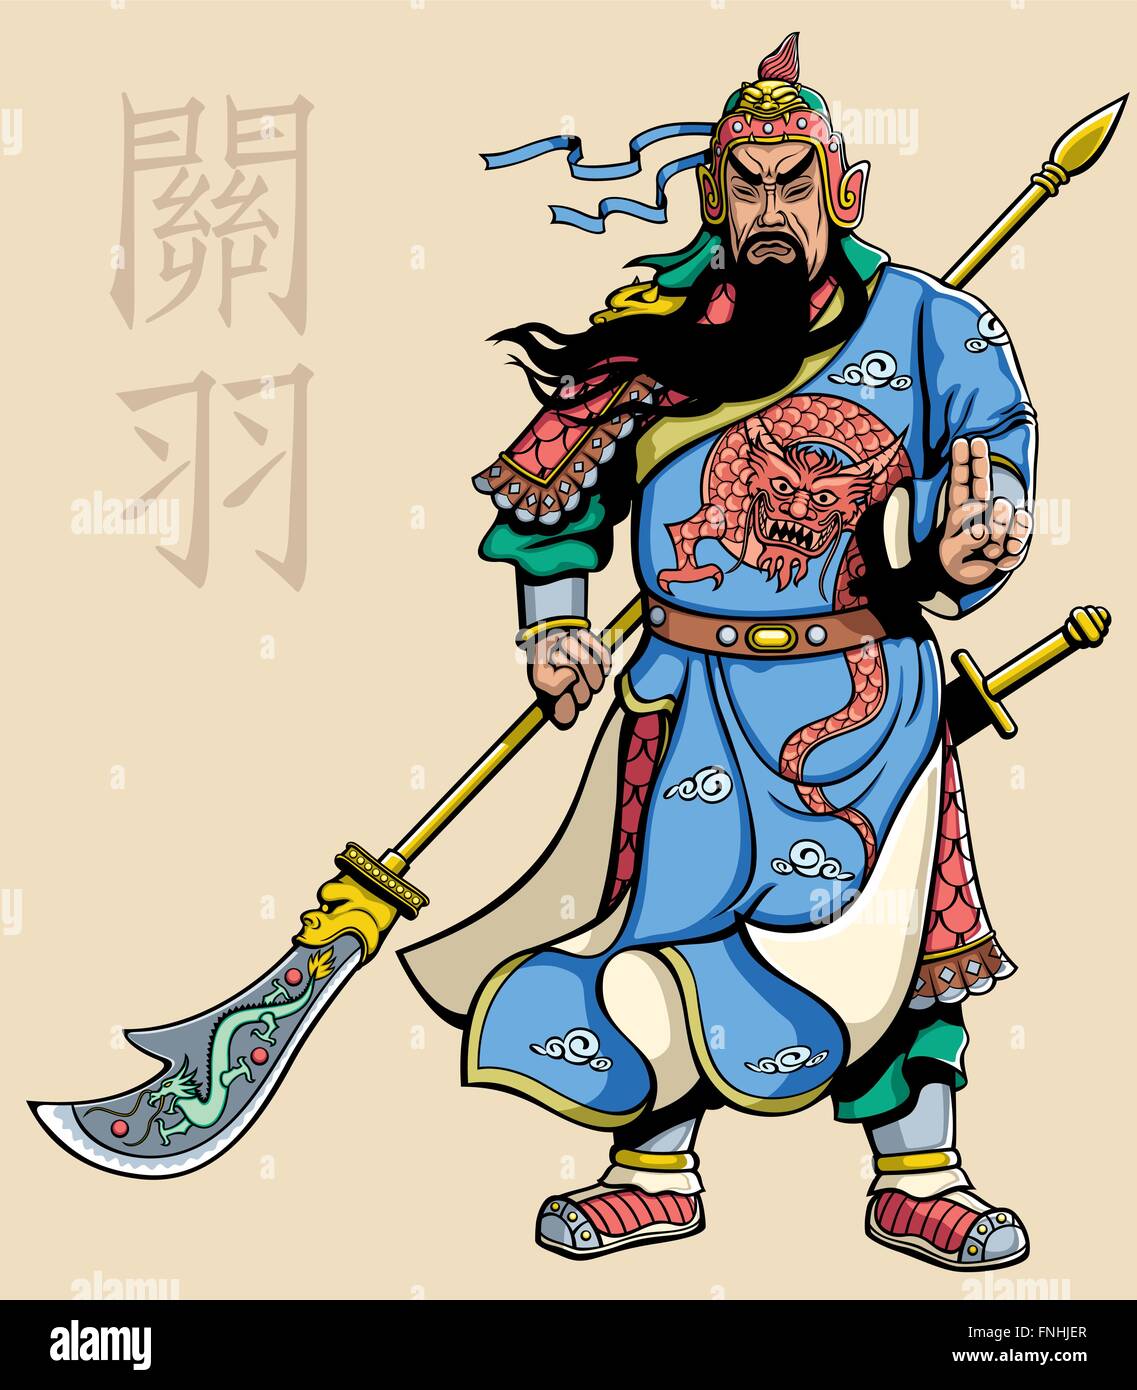 Vektor-Illustration der legendären chinesischen general Guan Yu. Stock Vektor